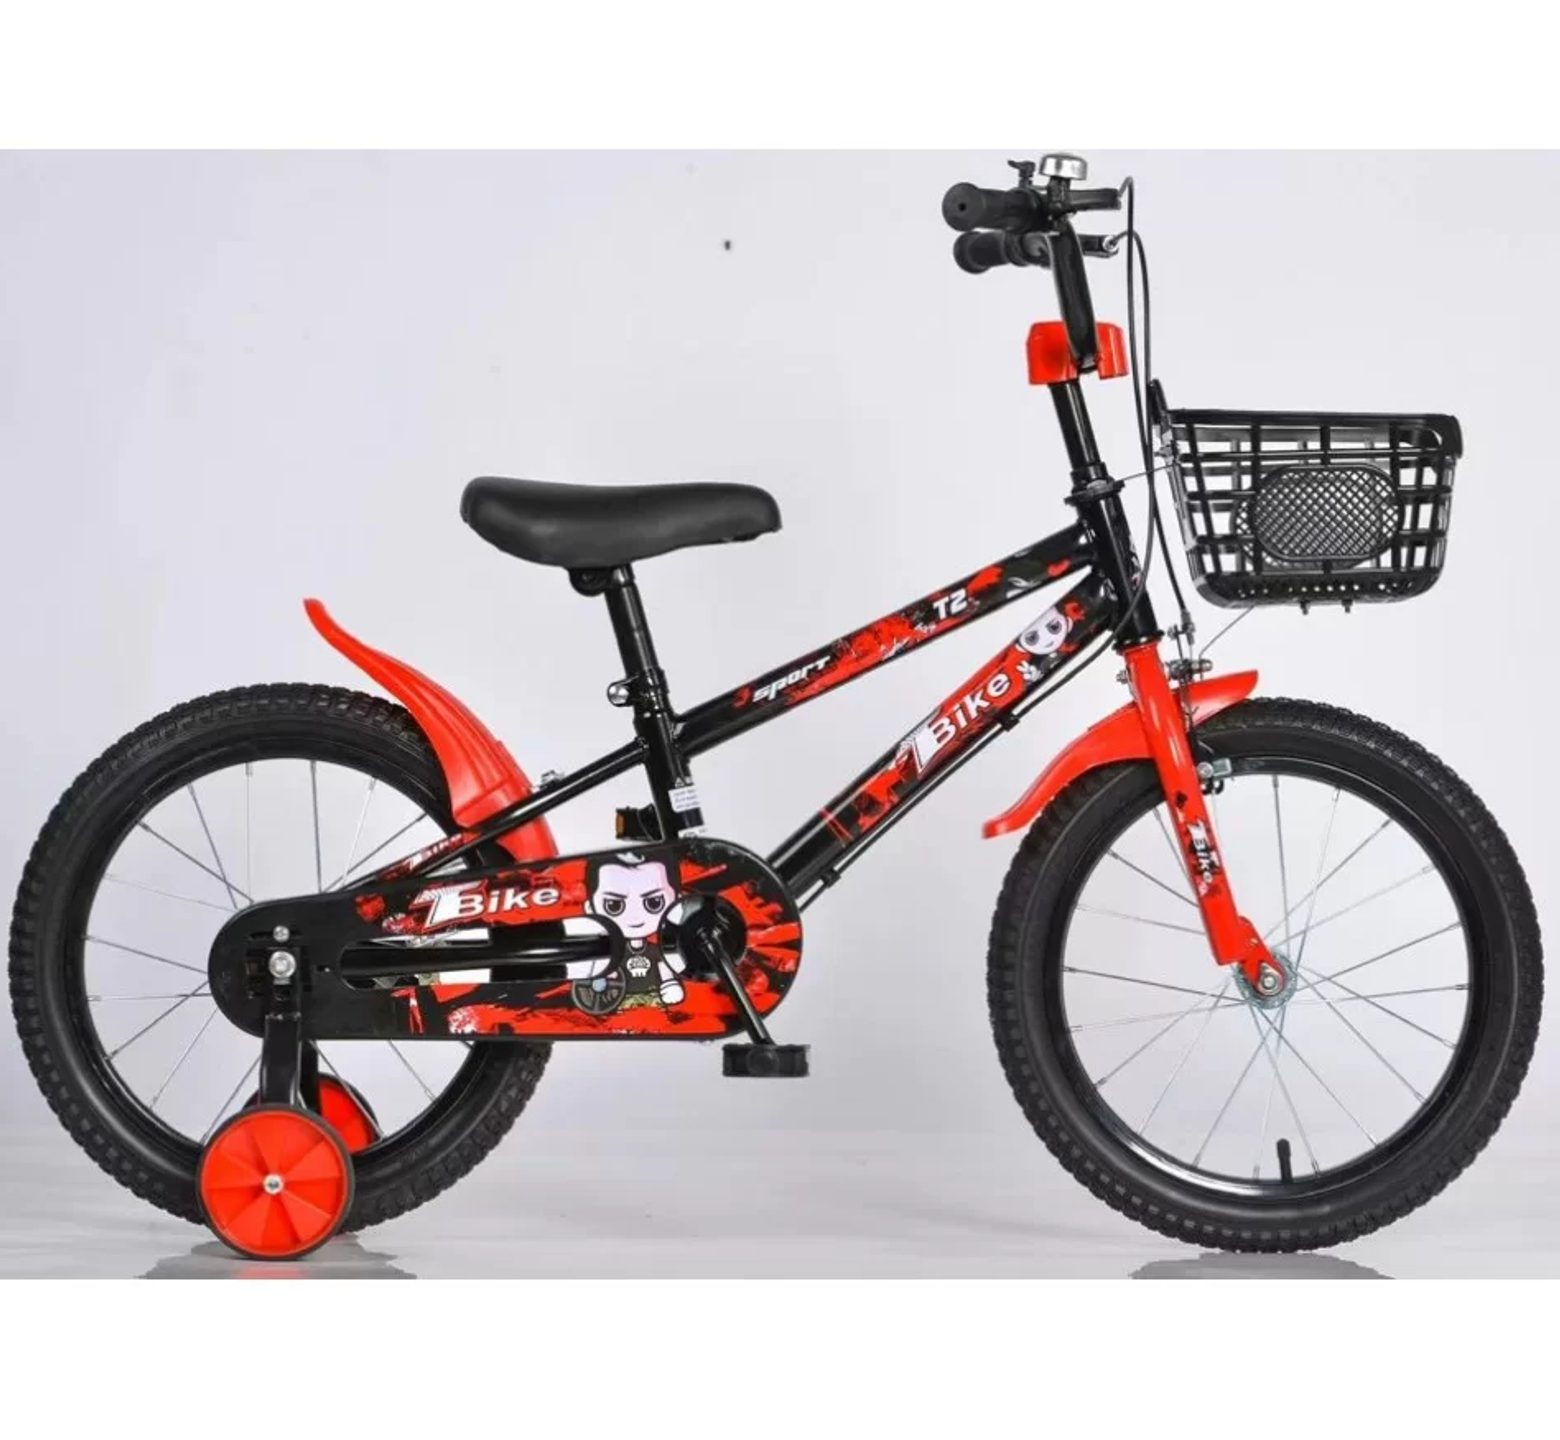 Ποδήλατο bmx T2 12 - 16 ιντσών με καλάθι σε μαύρο κόκκινο χρώμα